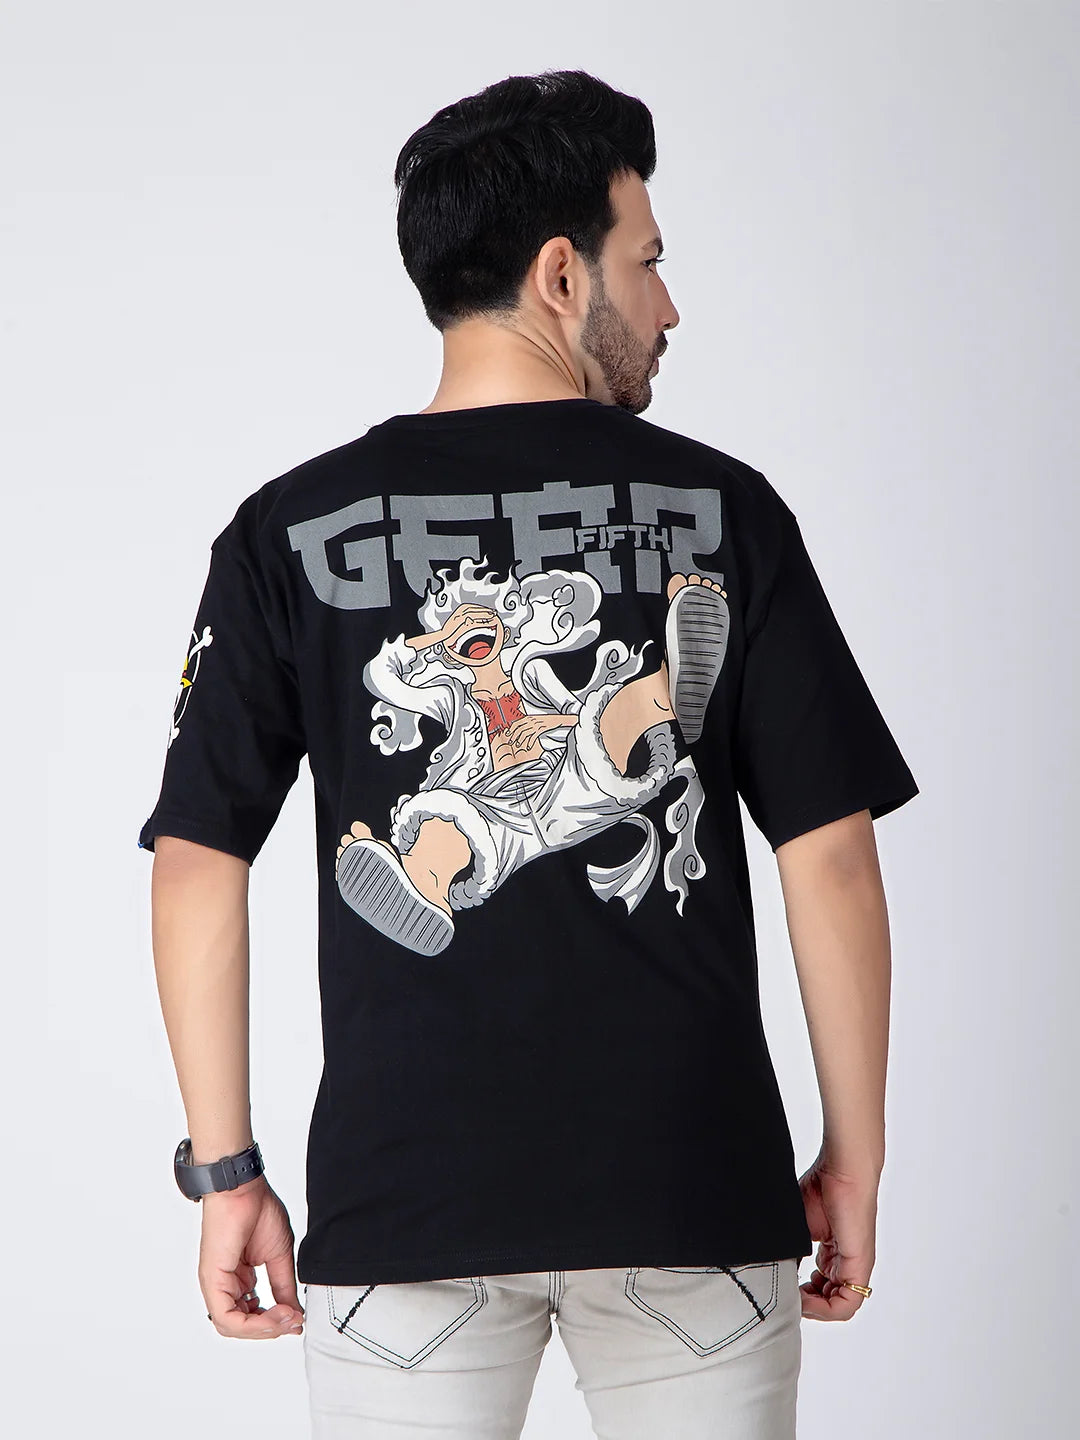 Luffy Gear 5 Oversized T-Shirt